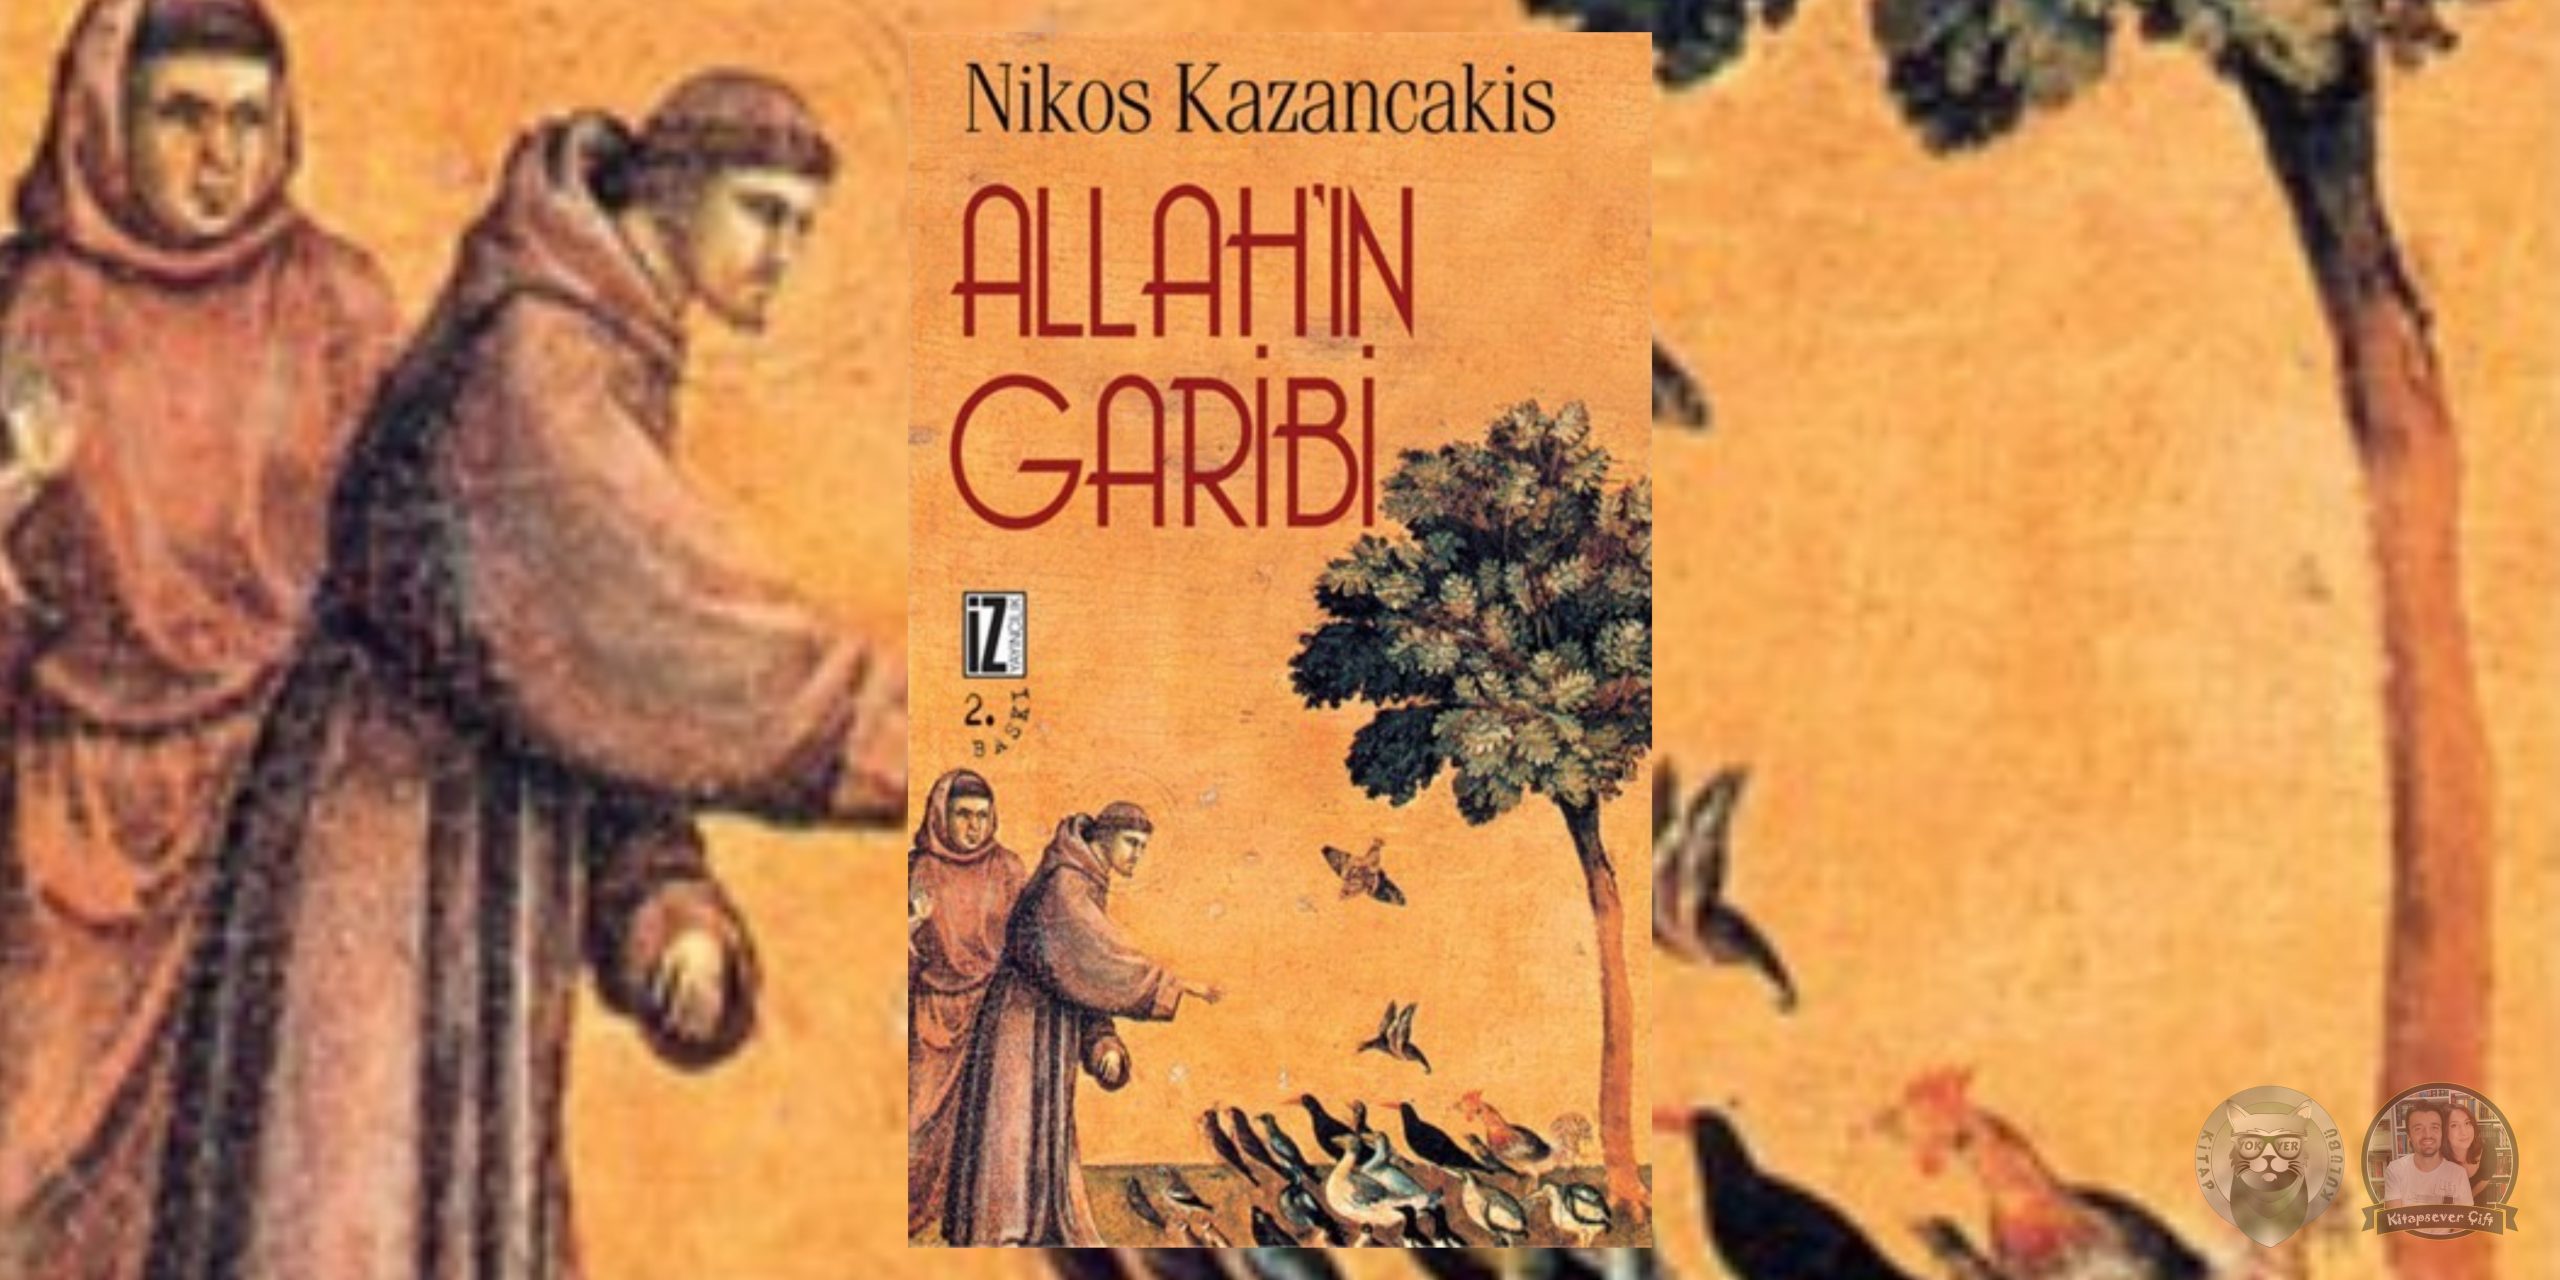 nikos kazancakis kitapları 7 – allahin garibi scaled